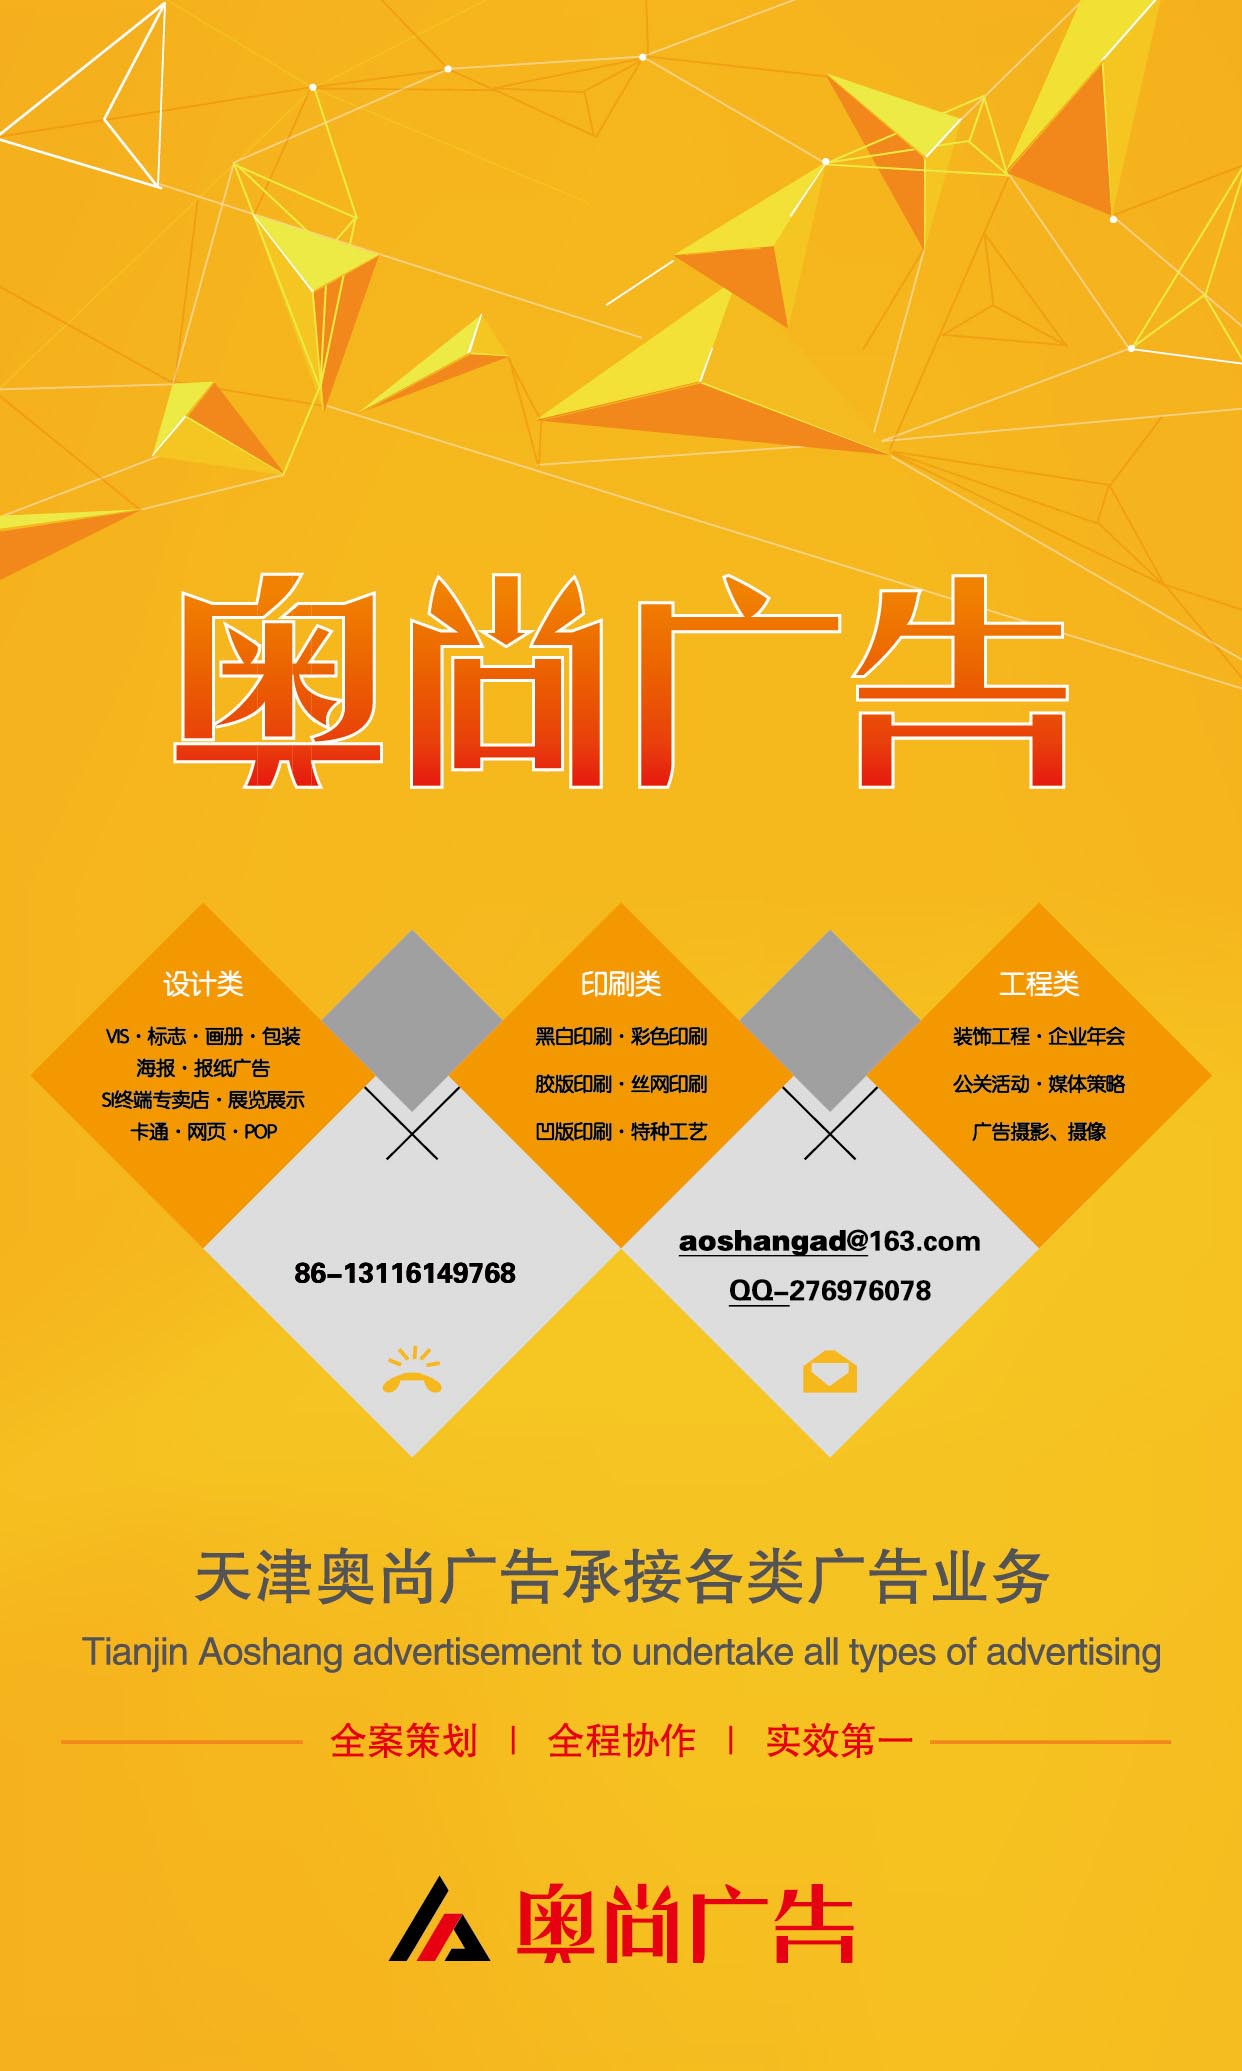 天津 广告 平面 设计 制作 奥尚广告 承接各类广告业务